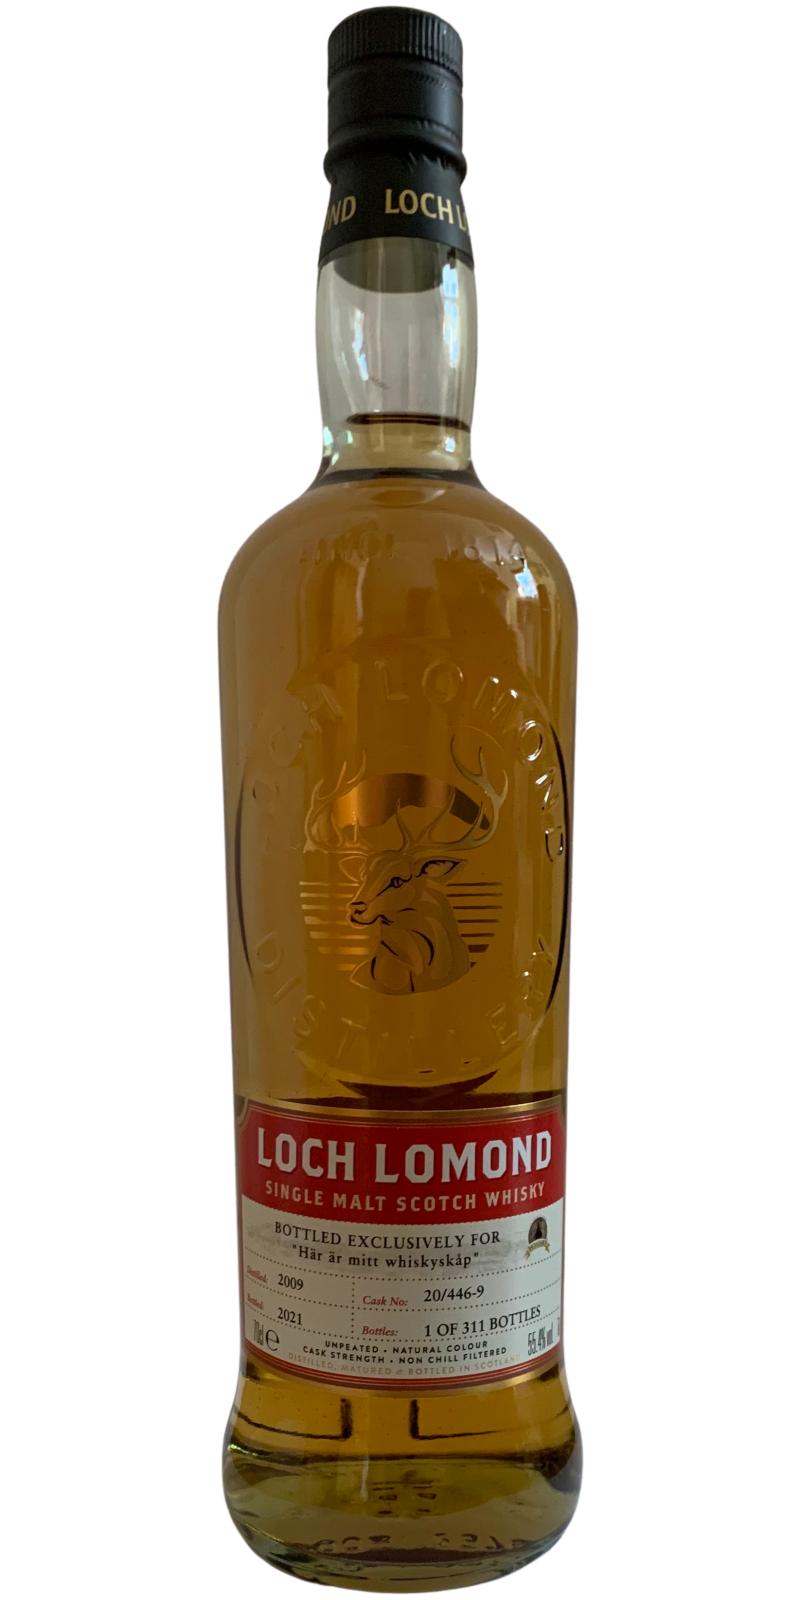 Loch Lomond 2009 Second fill Oloroso sherry Har ar mitt whiskyskap 55.4% 700ml